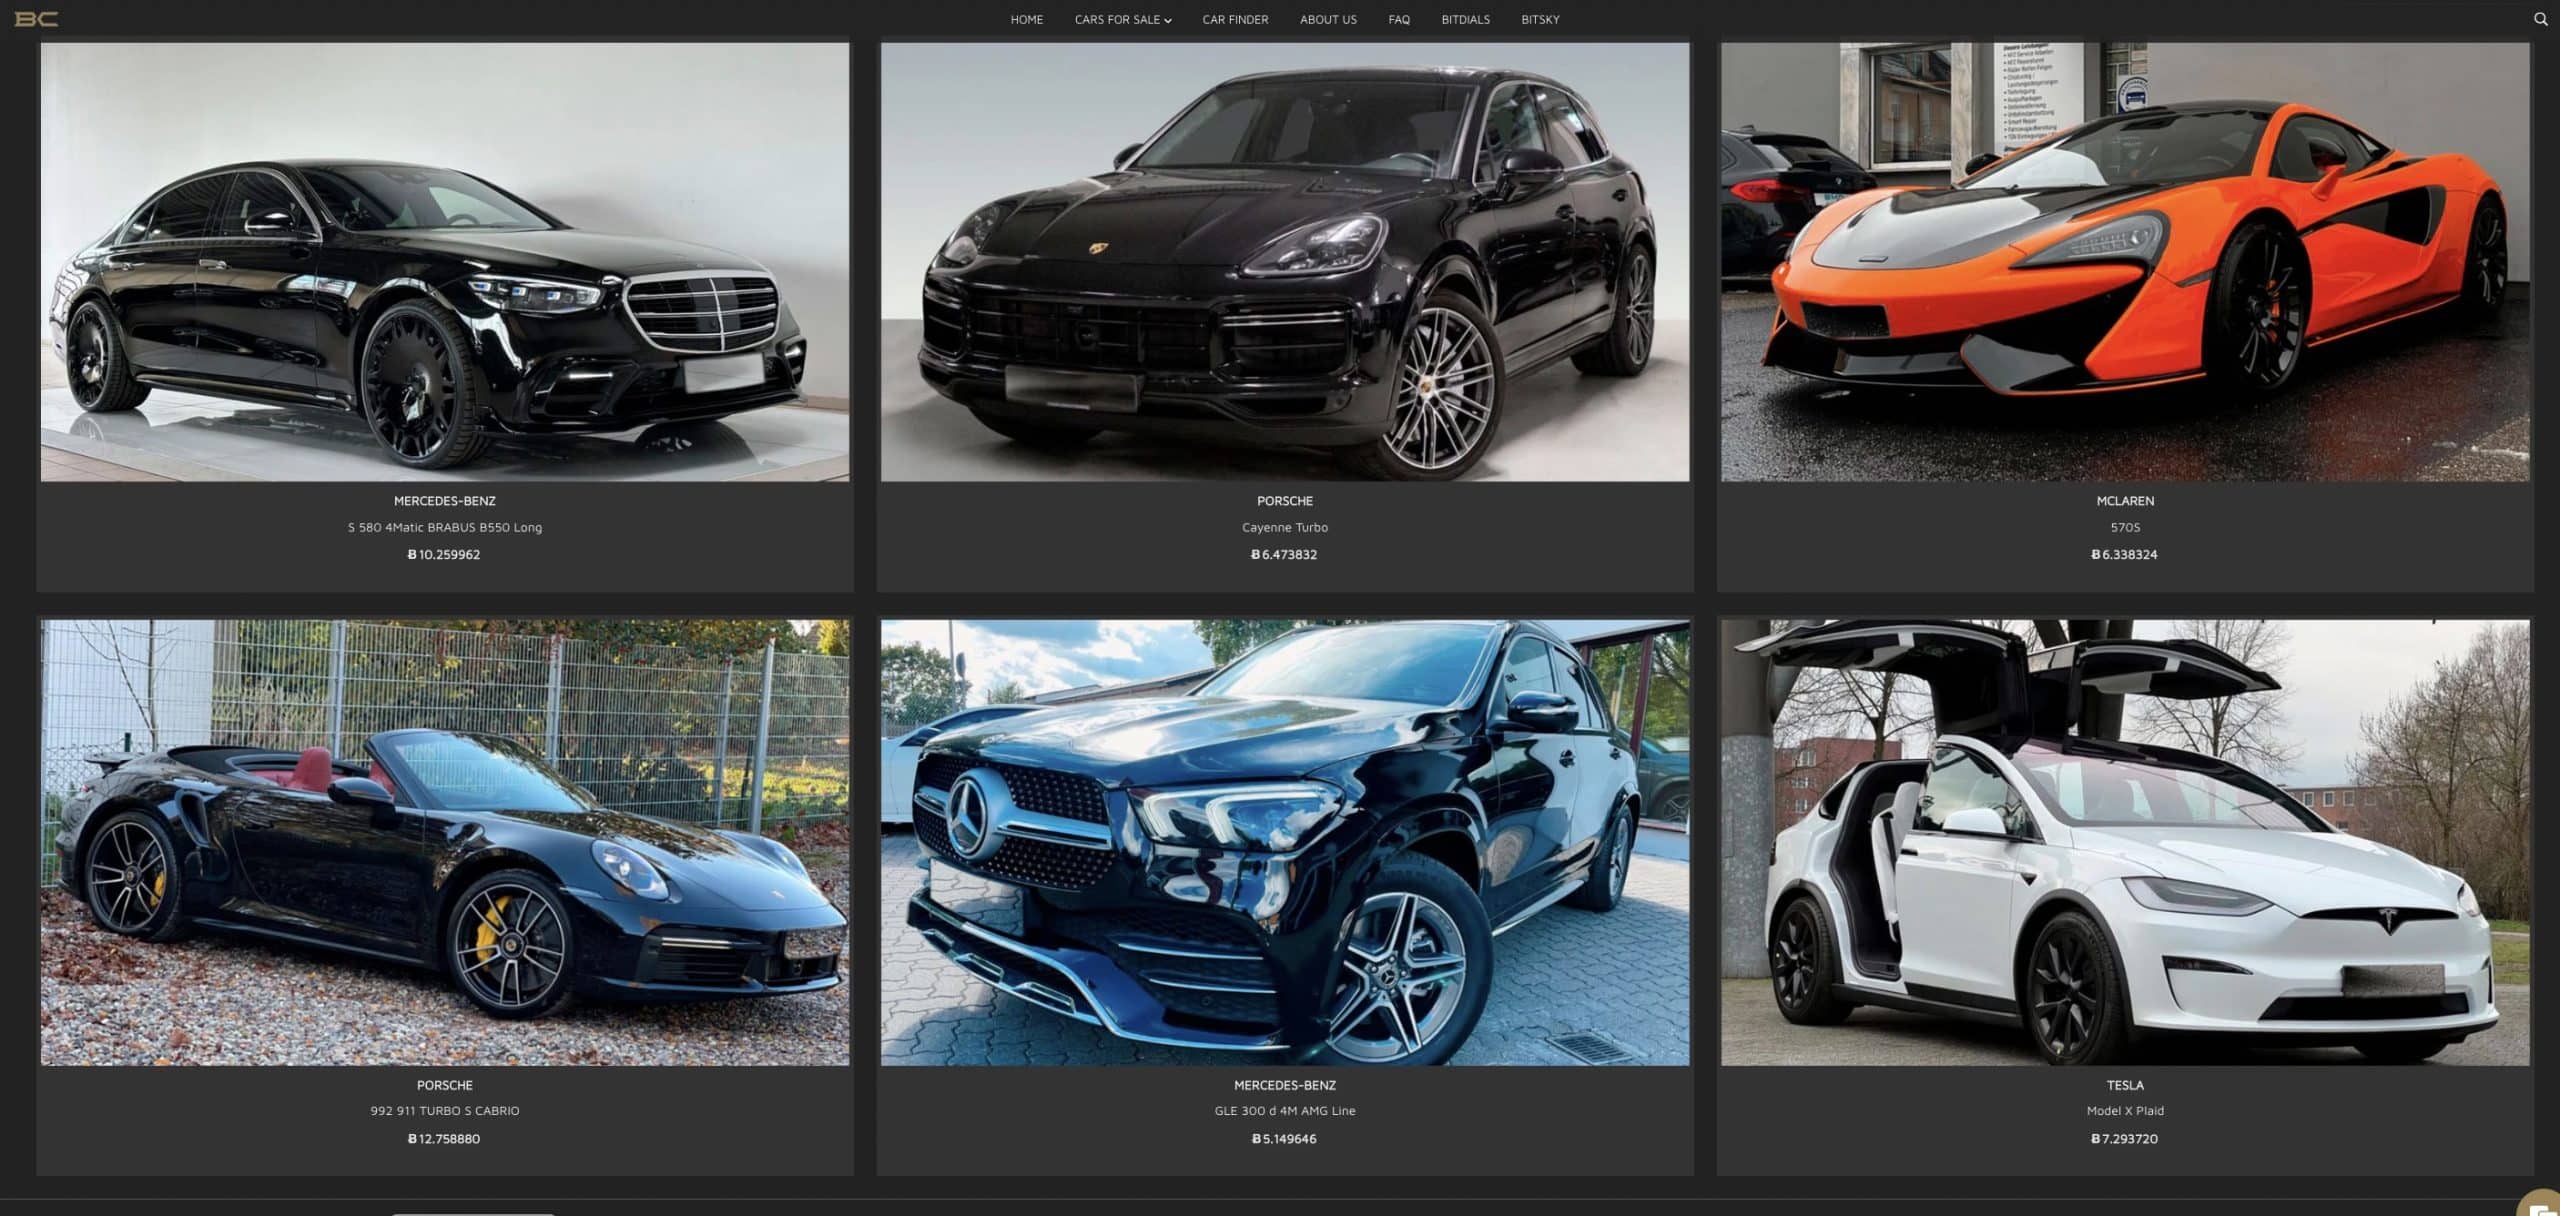 BitDials - Acheter des voitures de luxe avec un opérateur actif depuis 2016